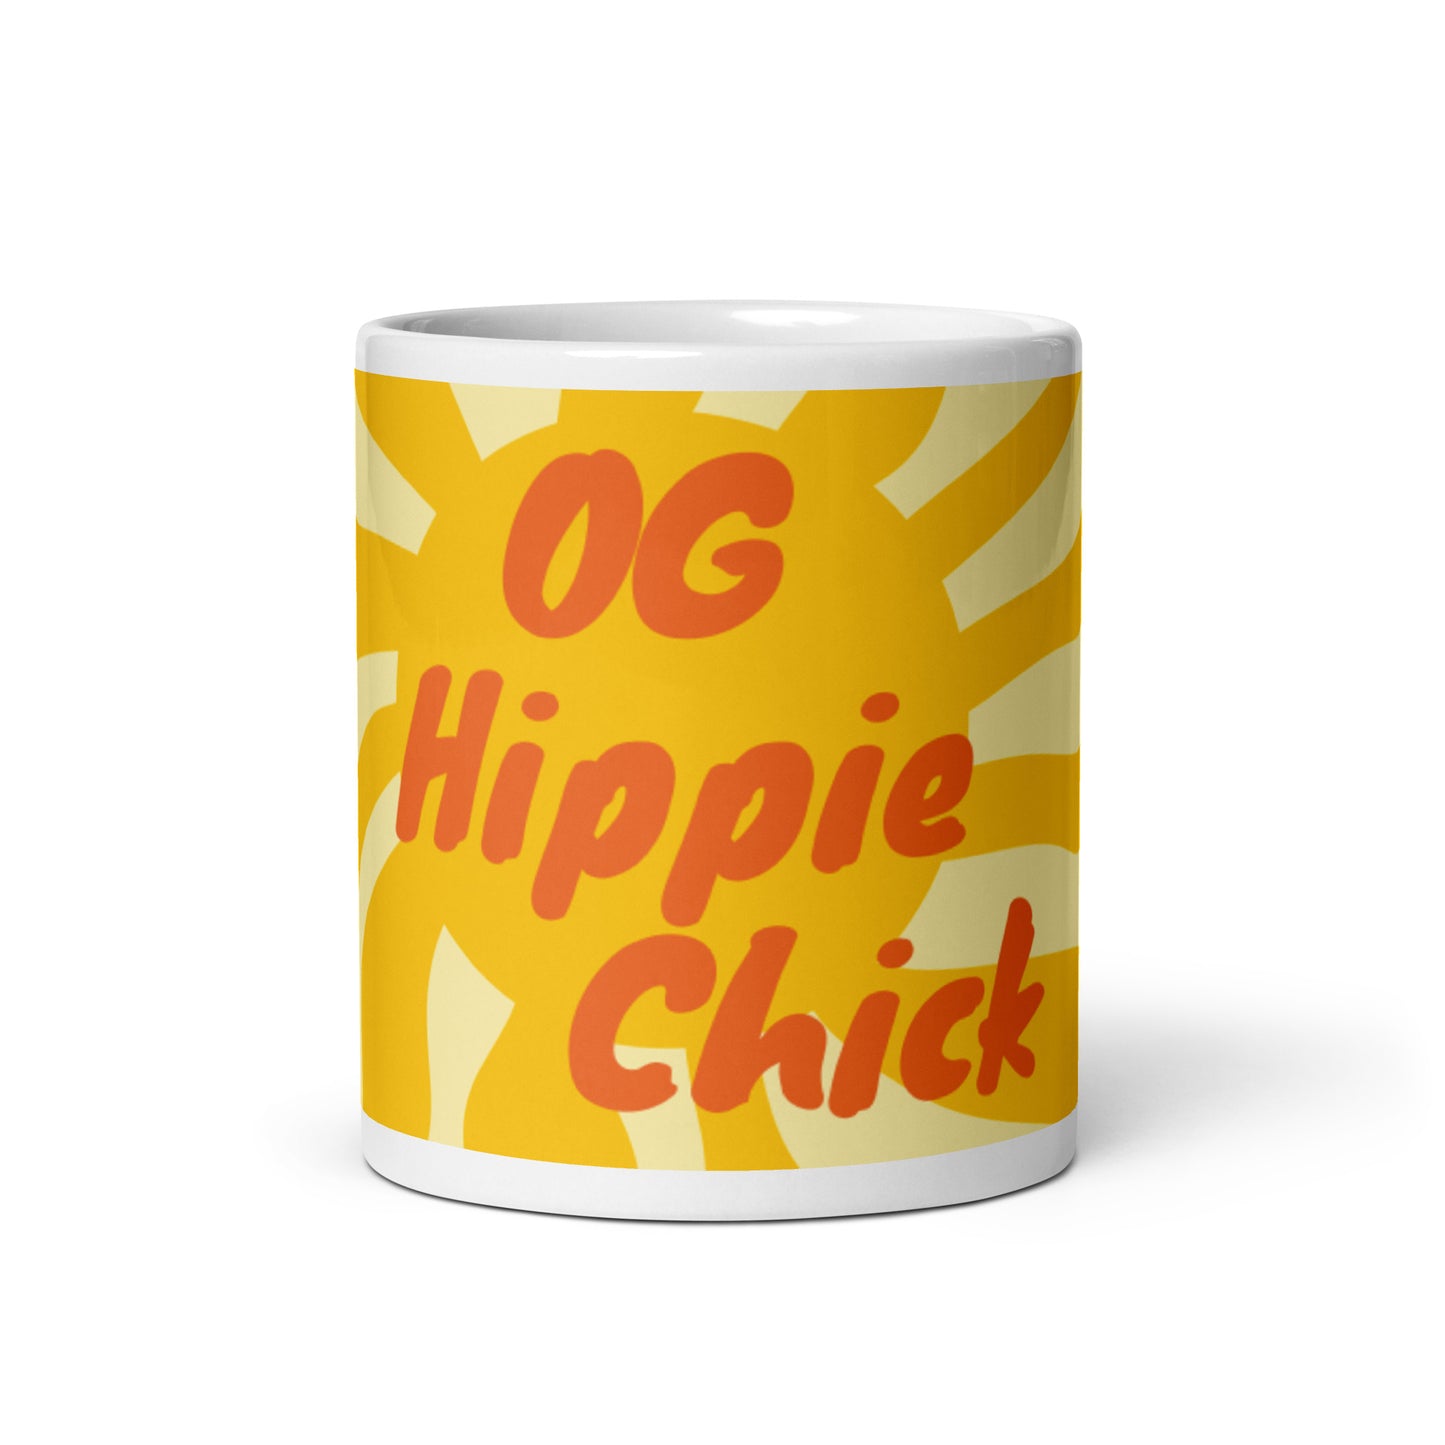 Tasse Brillante Soleil Blanc - OG Hippie Chick